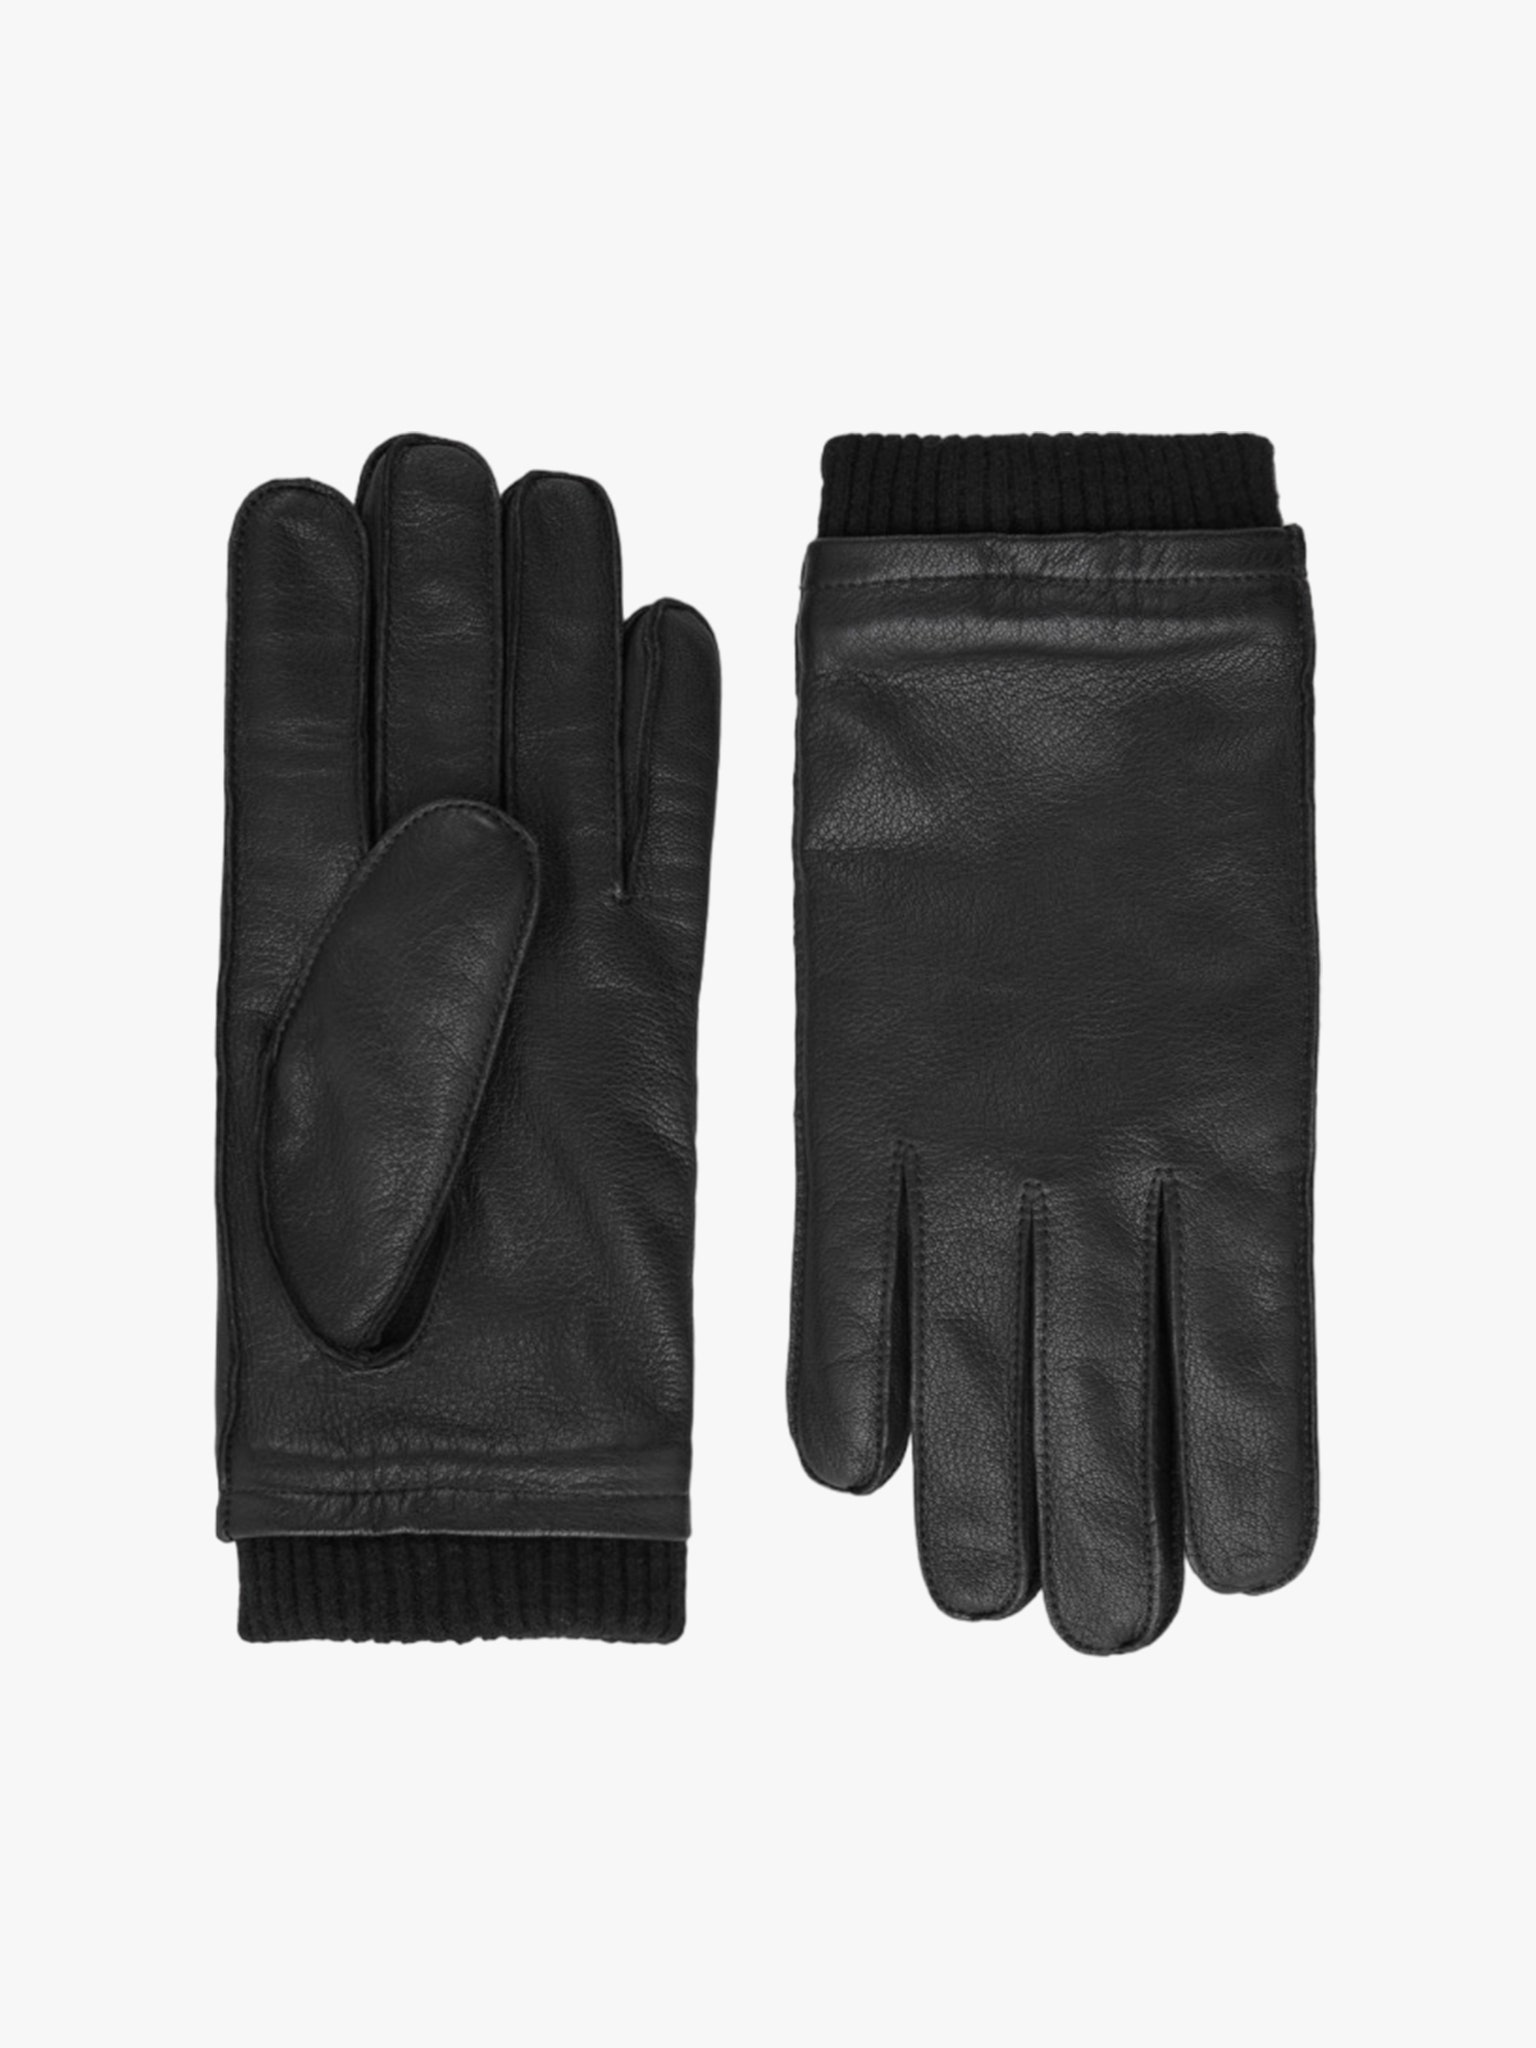 les paires de gants pour homme à porter cet hiver aussi bien en ville qu’à la montagne